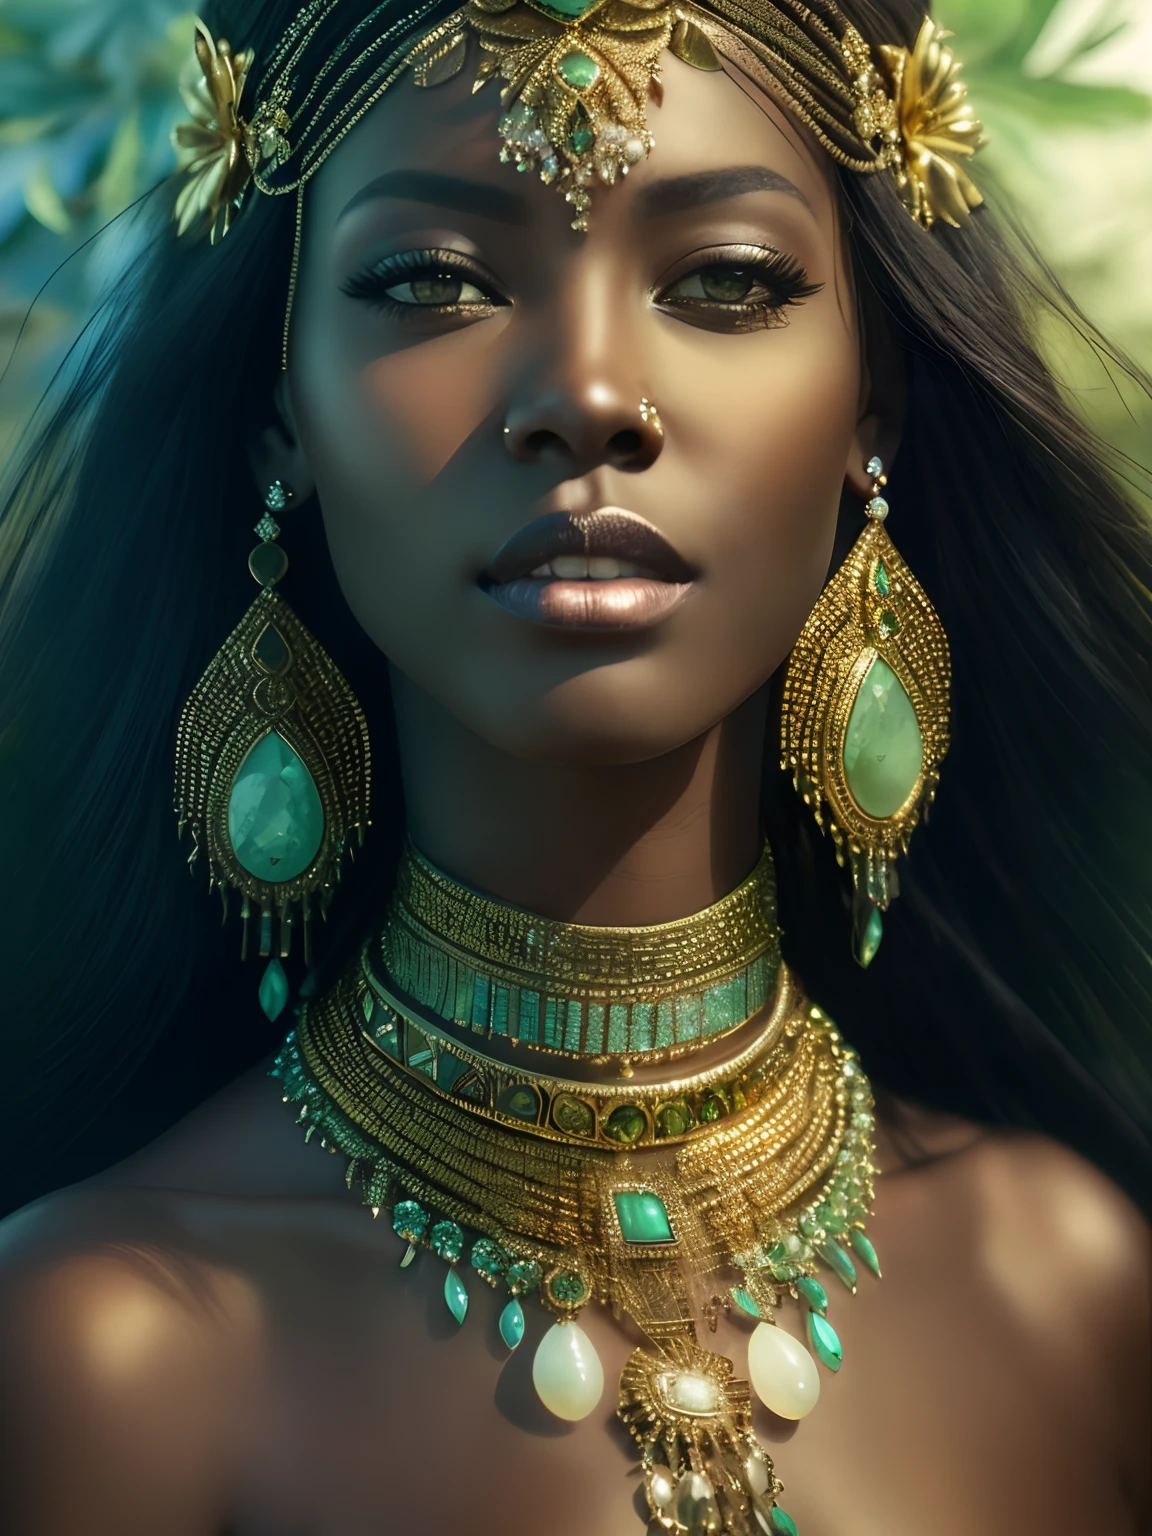 金と緑のネックレスとイヤリングを身に着けた女性の接写, stunning アフリカの王女, dark skin female 女神 of love, a stunning portrait of a 女神, black アフリカの王女, ゴージャスな女性, 女神. 非常に高いディテール, portrait of a beautiful 女神, 女神 close-up portrait, 美しいファンタジーの皇后, アフリカの王女, エピック3Dオシュン